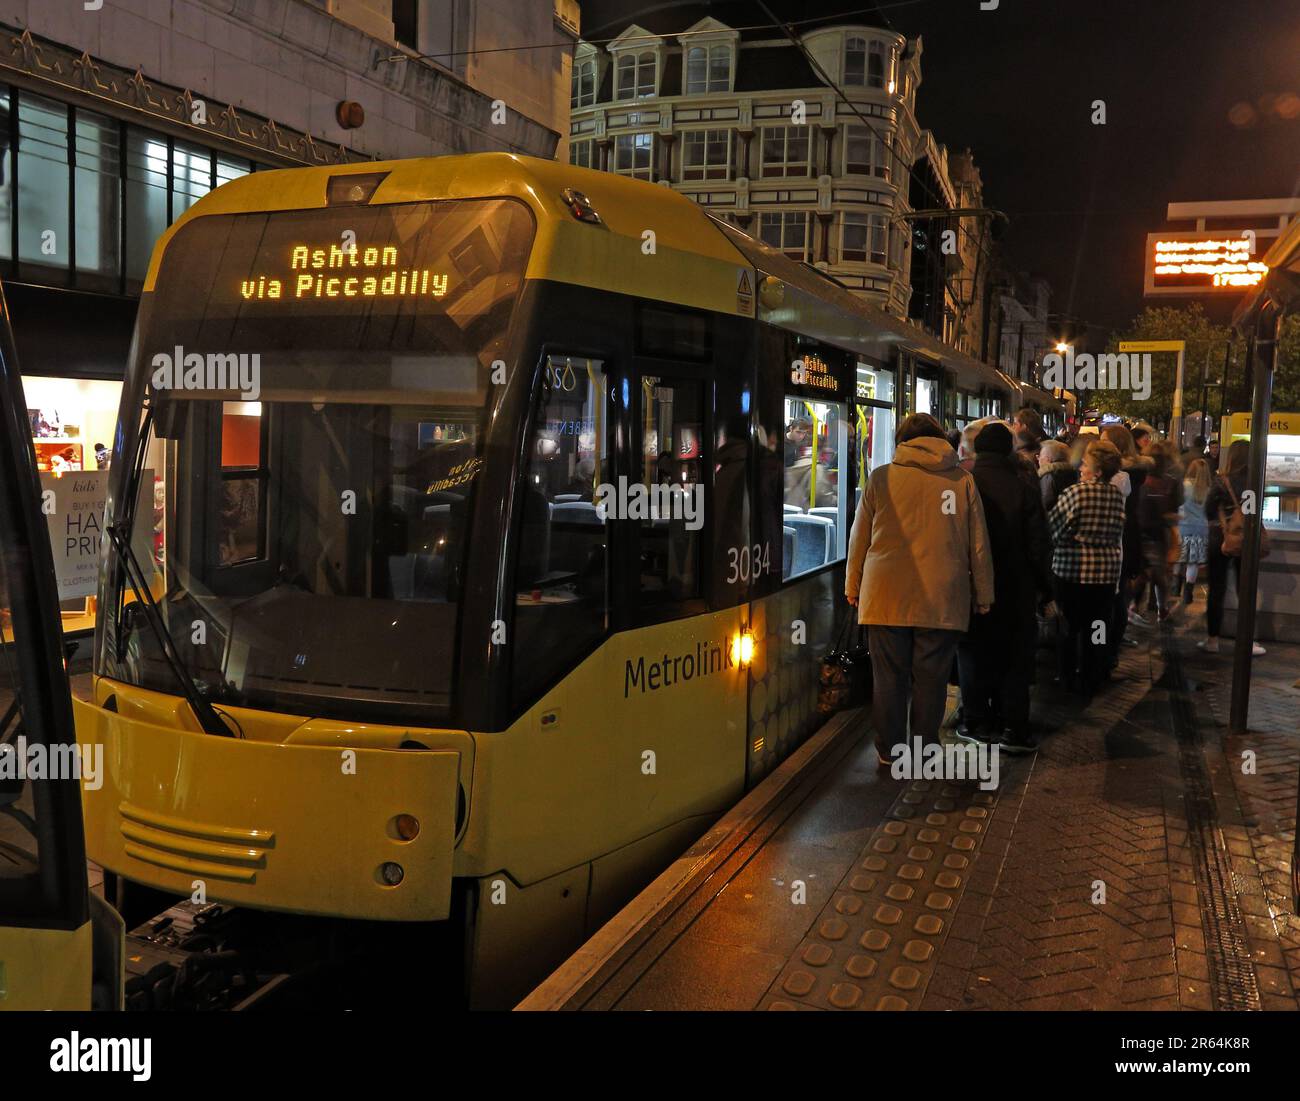 Metrolink Manchester tram per Ashton via Piccadilly, in una serata piovosa, in Market Street, Manchester, Lancashire, Inghilterra, REGNO UNITO, M1 1PW Foto Stock